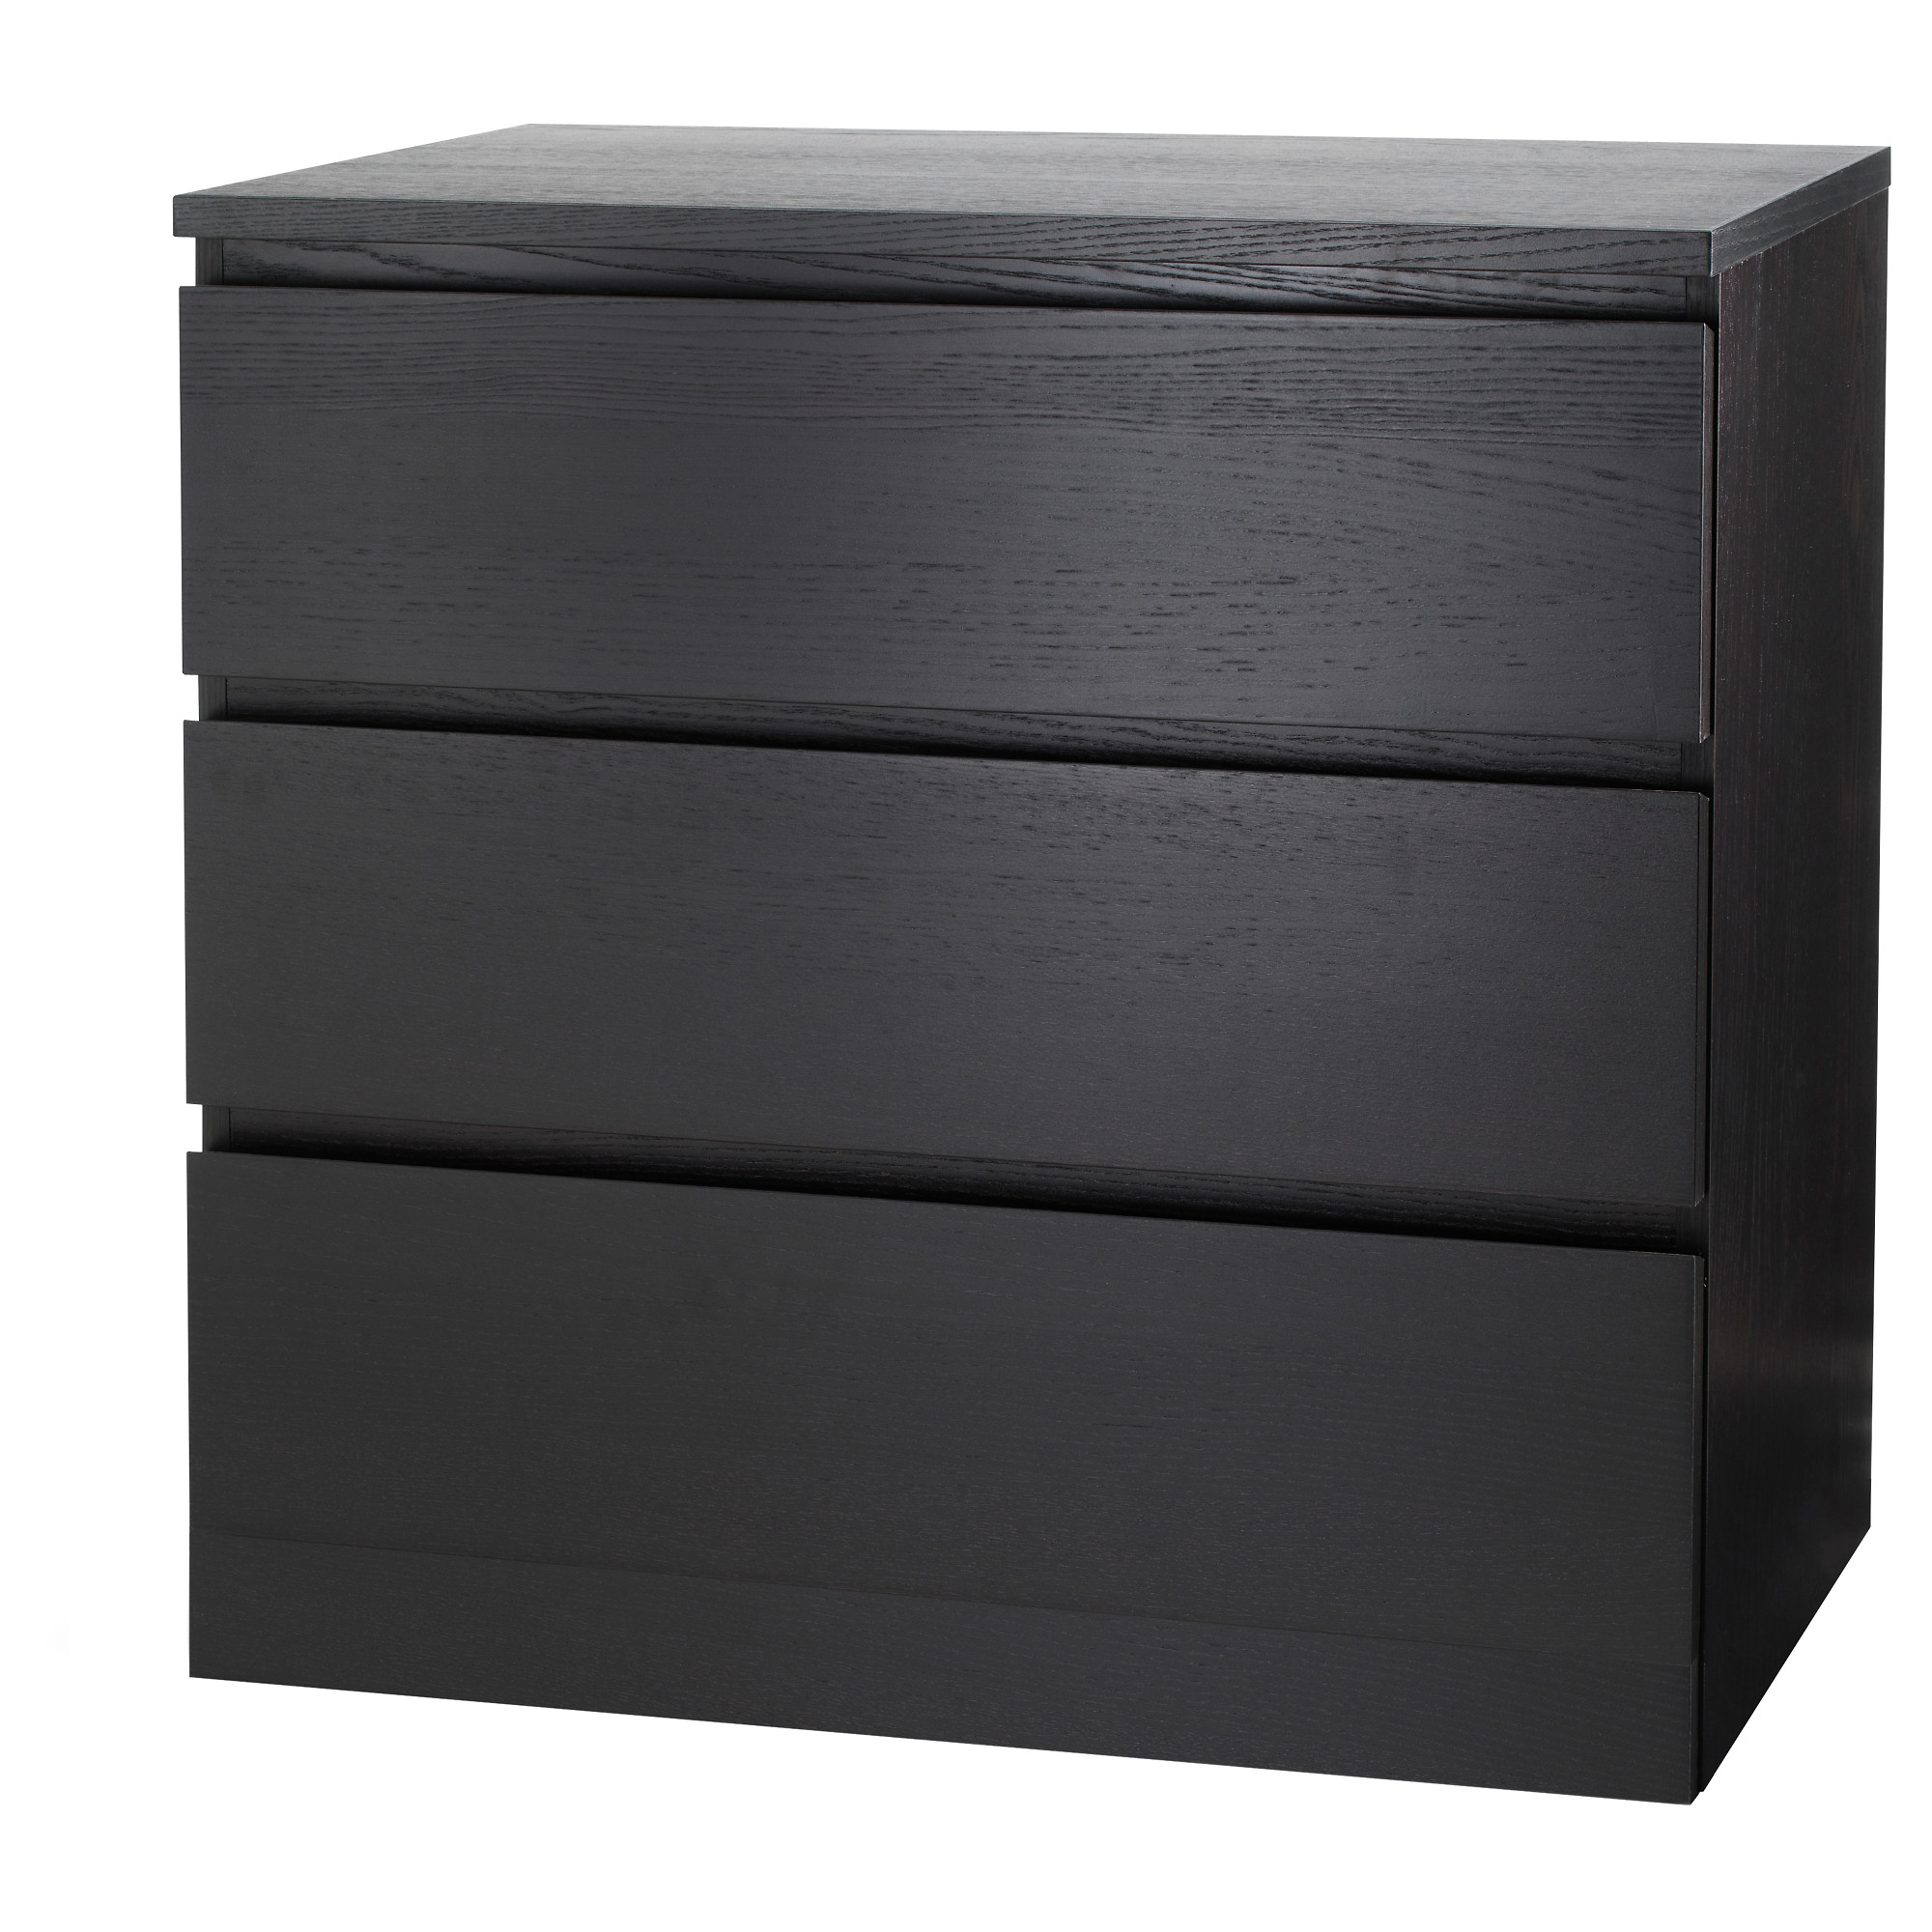 MALM - 三層抽屜櫃, 棕黑色, 80x78 厘米| IKEA 香港及澳門